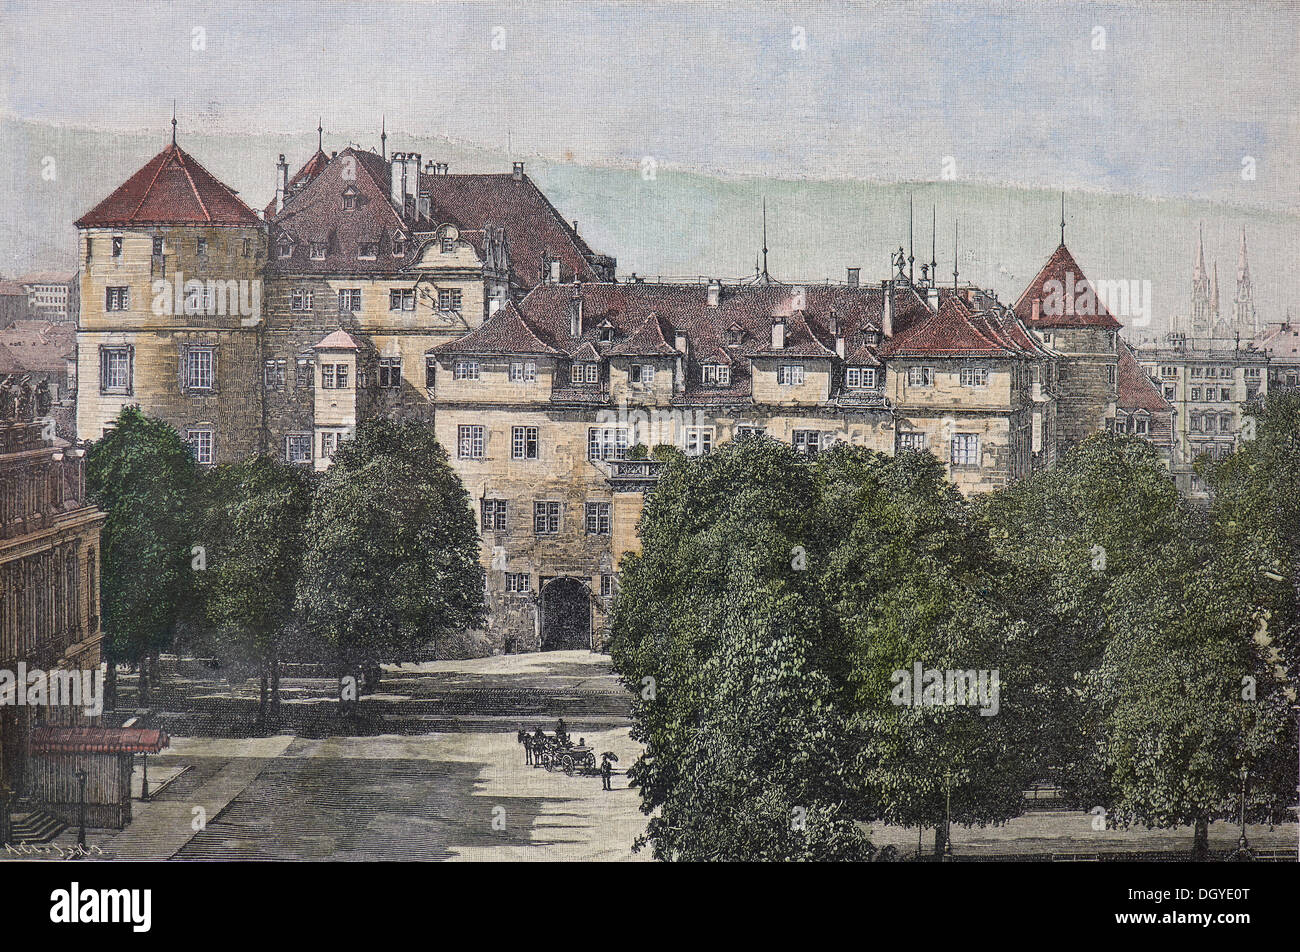 Vieux château, la place Karlsplatz, Stuttgart, Allemagne, Baden-Wuerttembertg, une illustration historique colorée à la main, vers 1860 Banque D'Images